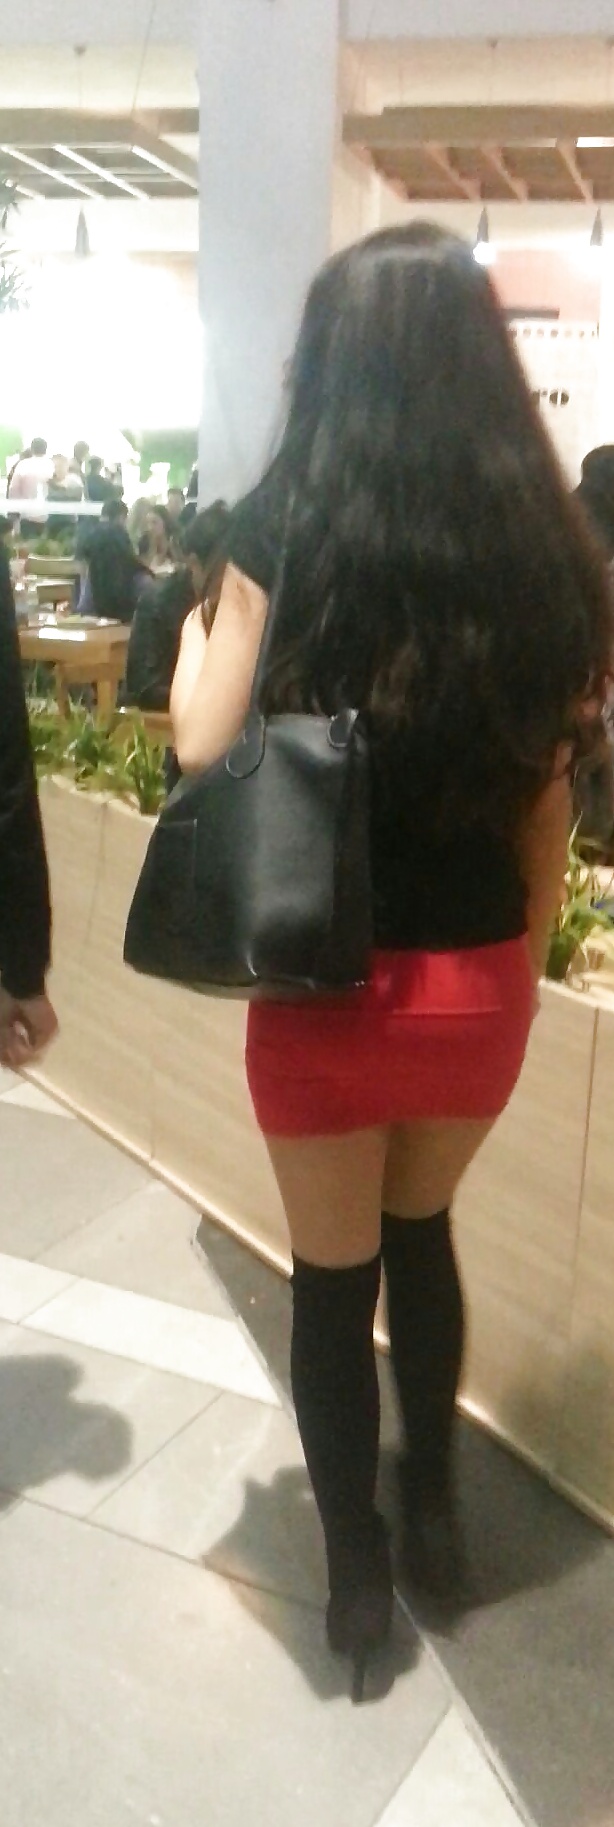 Spy mini skirt sexy teens in mall romanian #39540209